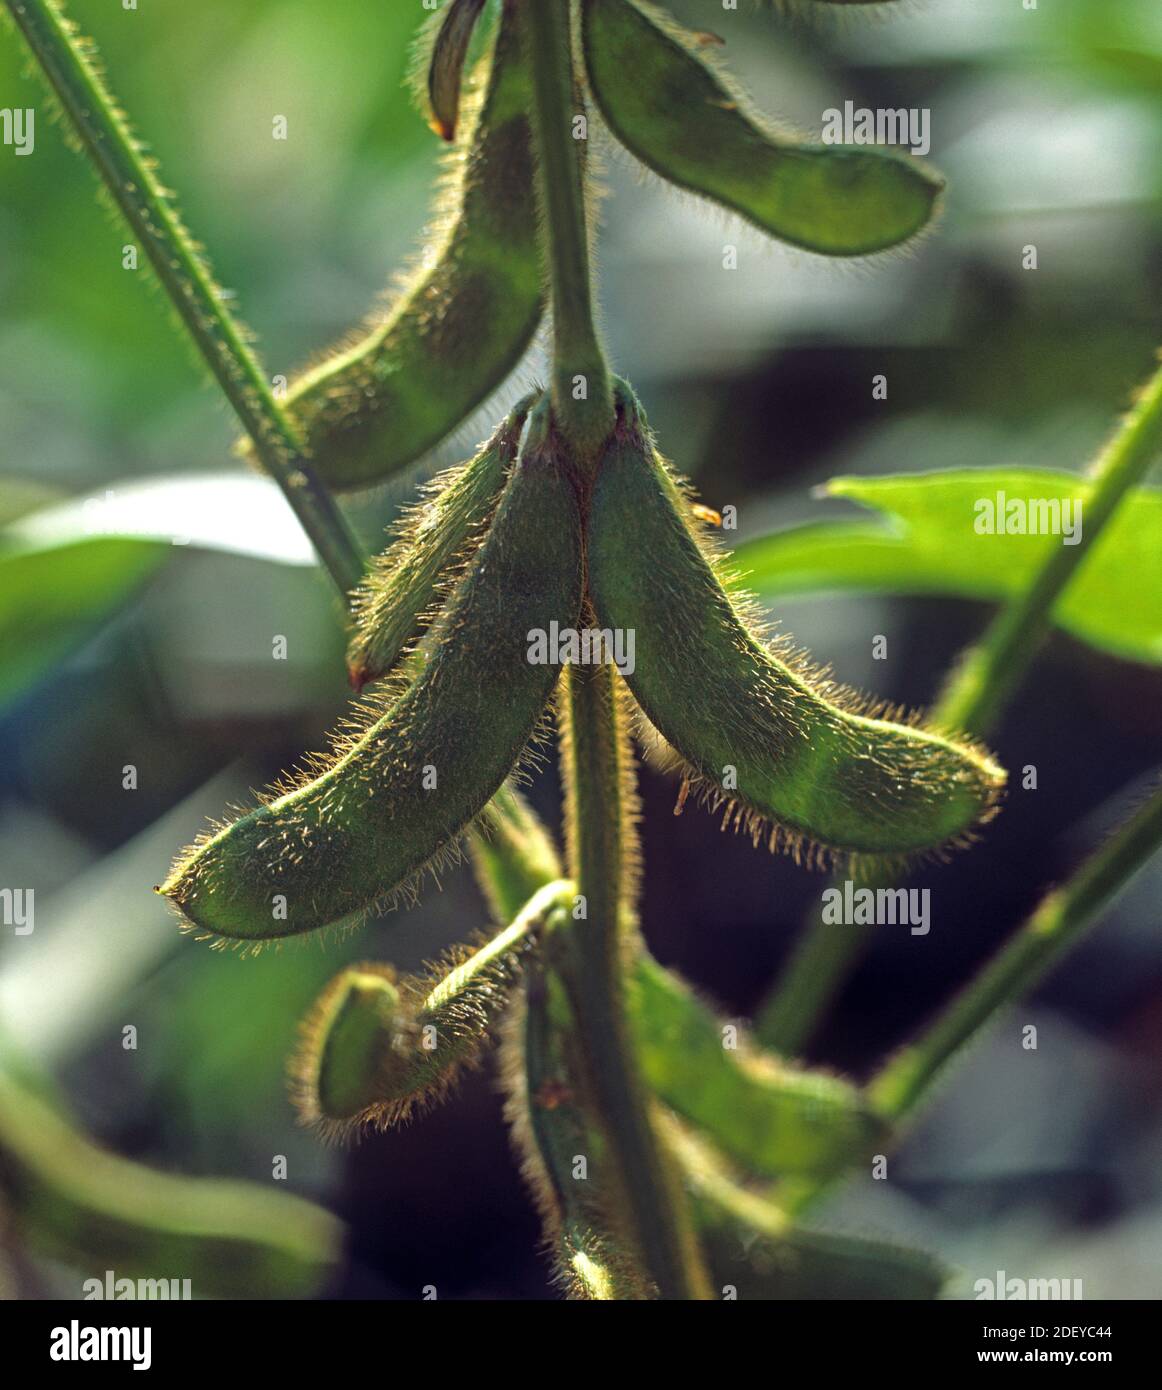 Reife unreife grüne Sojabohnen (Glycine max) Schoten mit Haaren zurück durch geringes Sonnenlicht in einer Ernte beleuchtet, Thailand Stockfoto